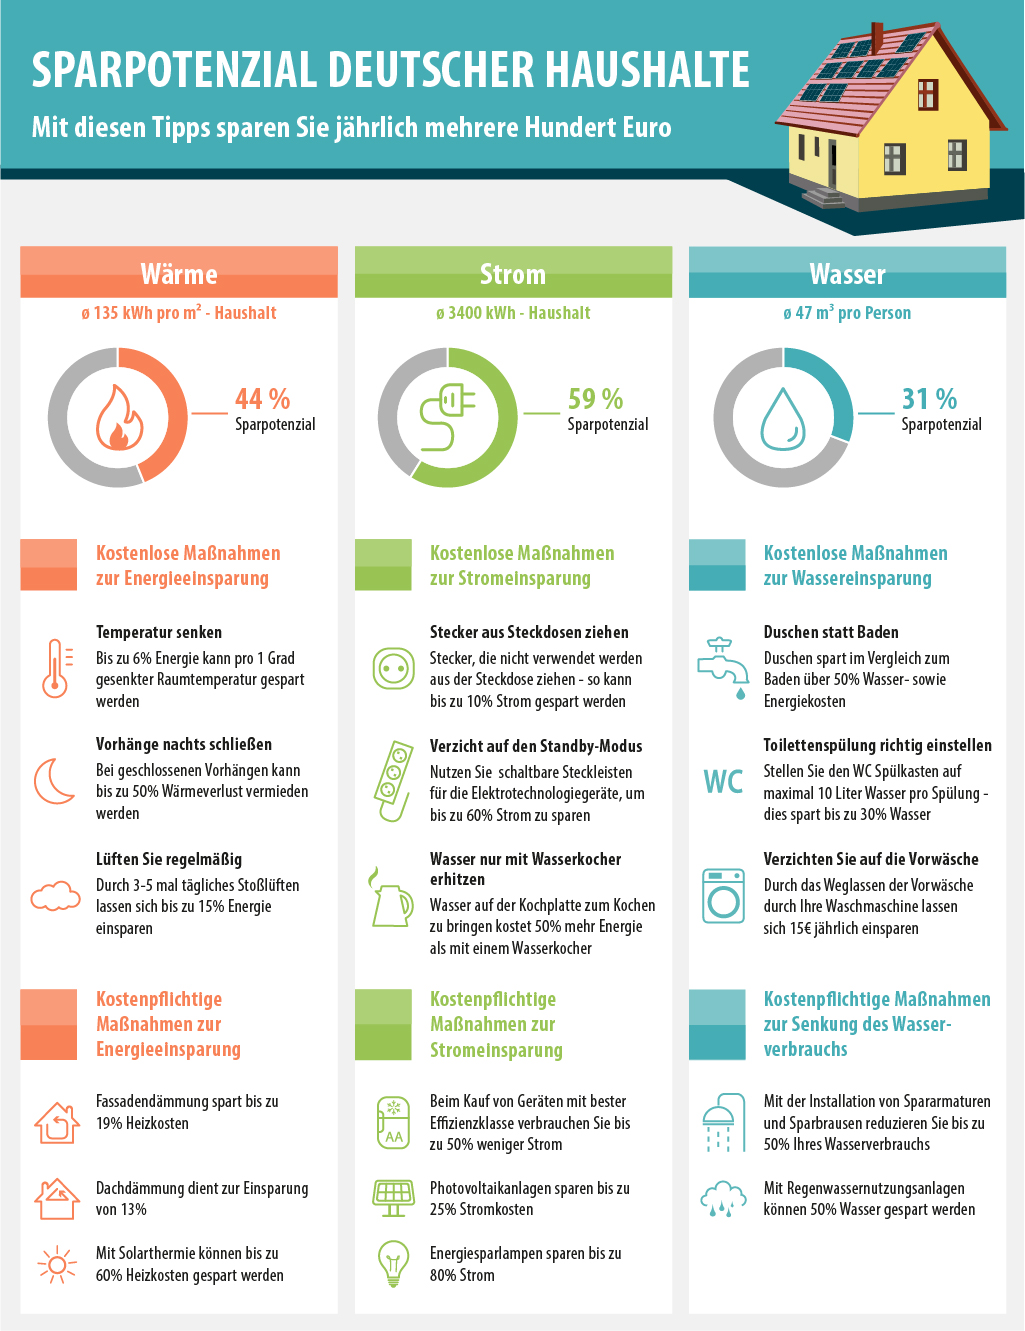 Die Infografik zeigt das Sparpotenzial deutscher Haushalte